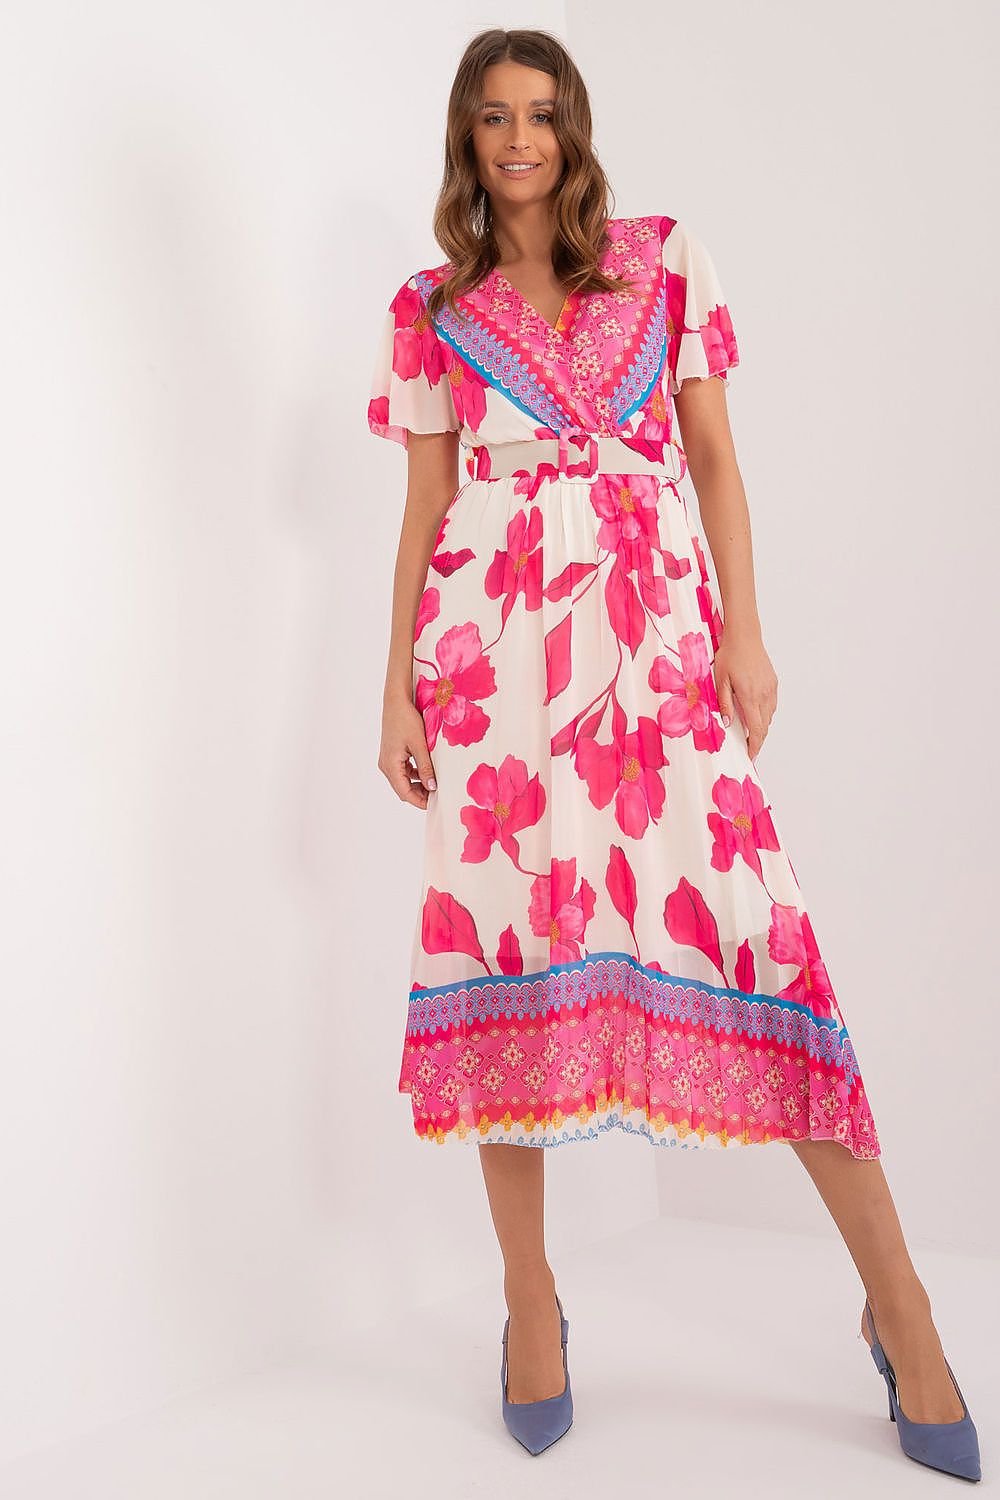 TEEK - Watercolor Flowers Dress DRESS TEEK MH pink One Size 